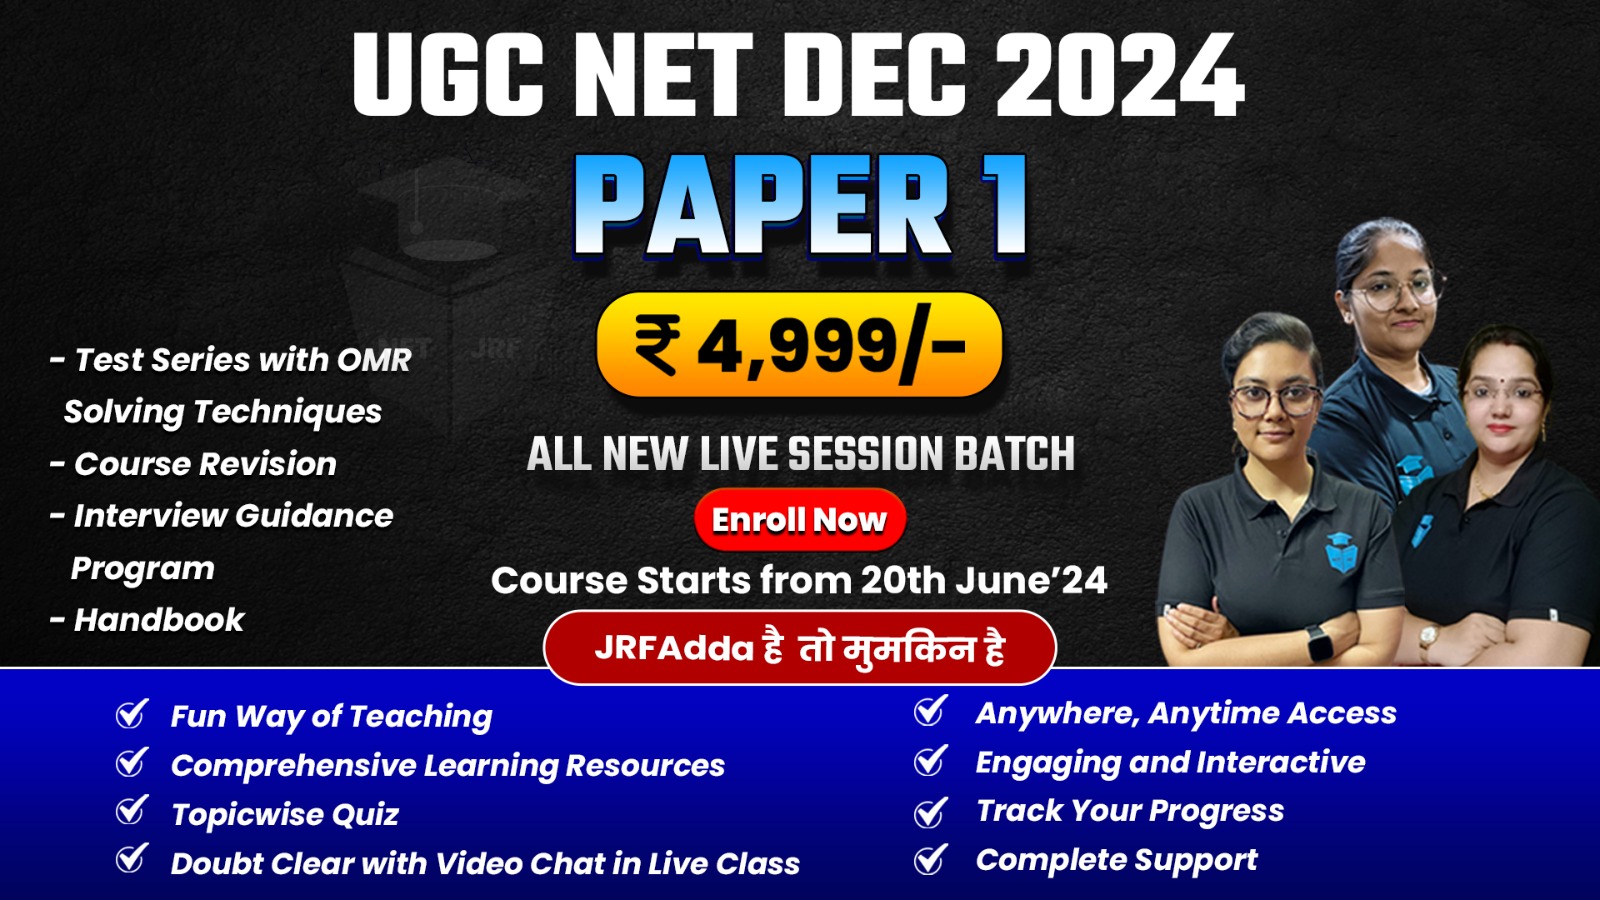 Dec 2024 UGC NET Complete Paper-1 Batch